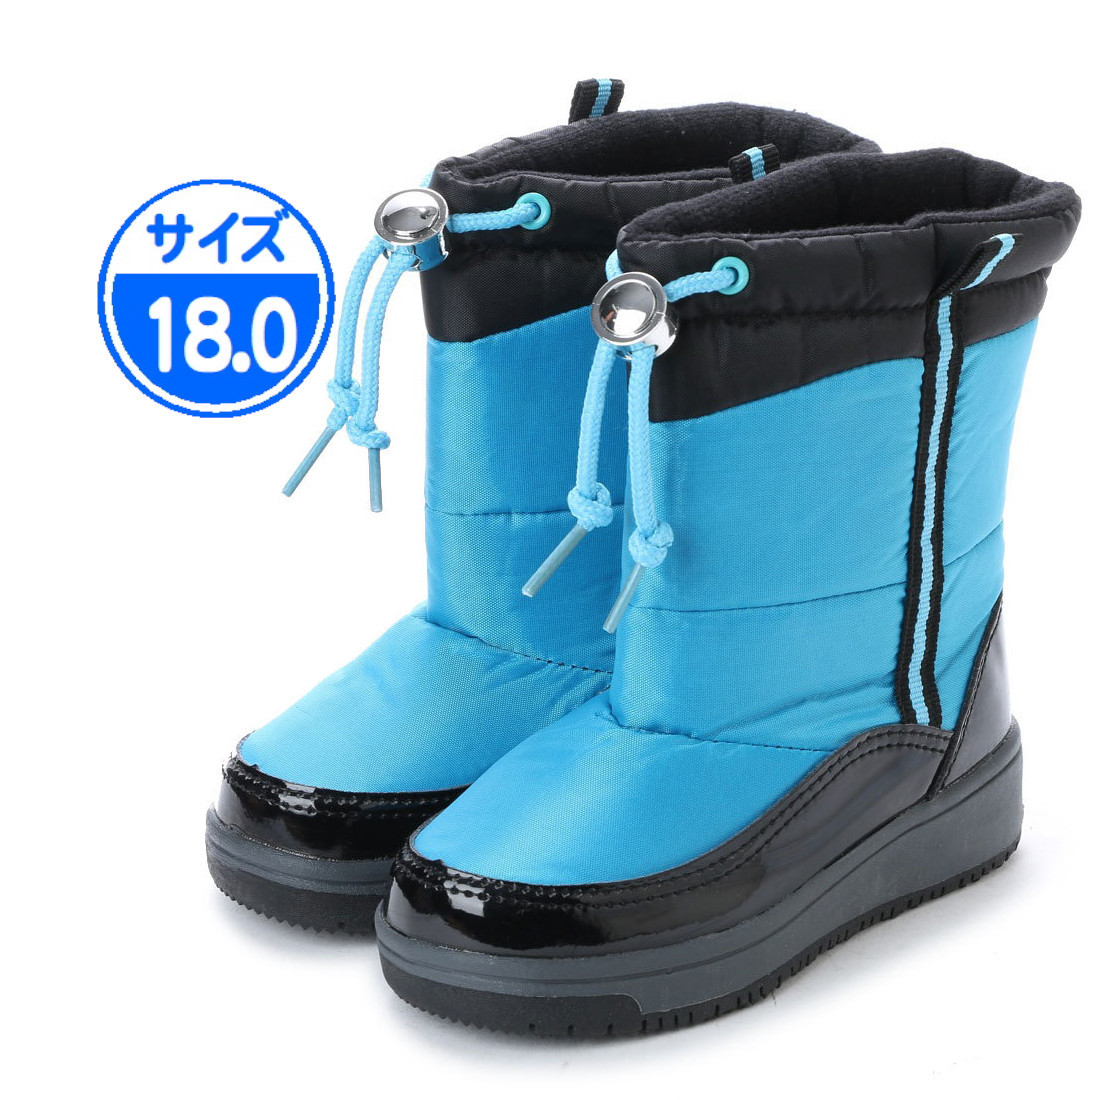 【新品 未使用】子供用 防寒ブーツ ブルー 18.0cm 青 17990